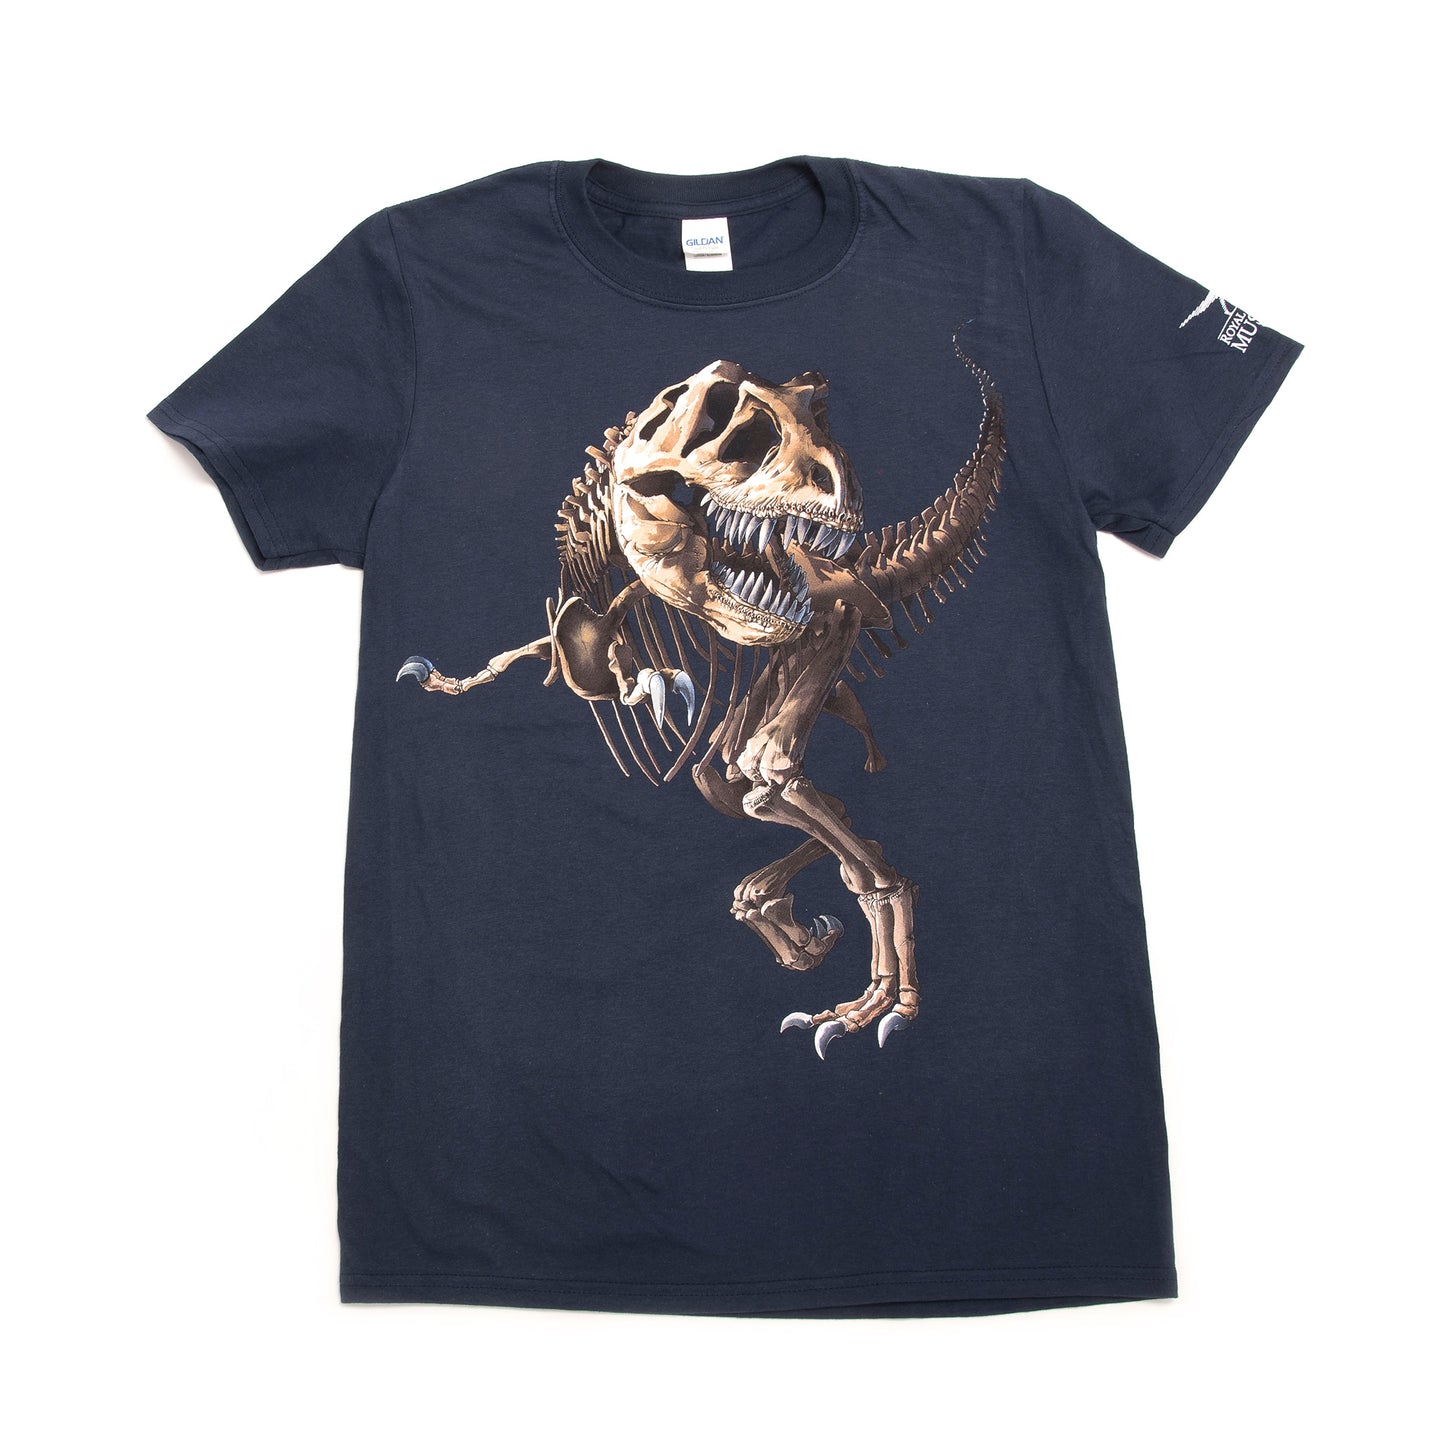 T. rex Skeleton Youth T-shirt